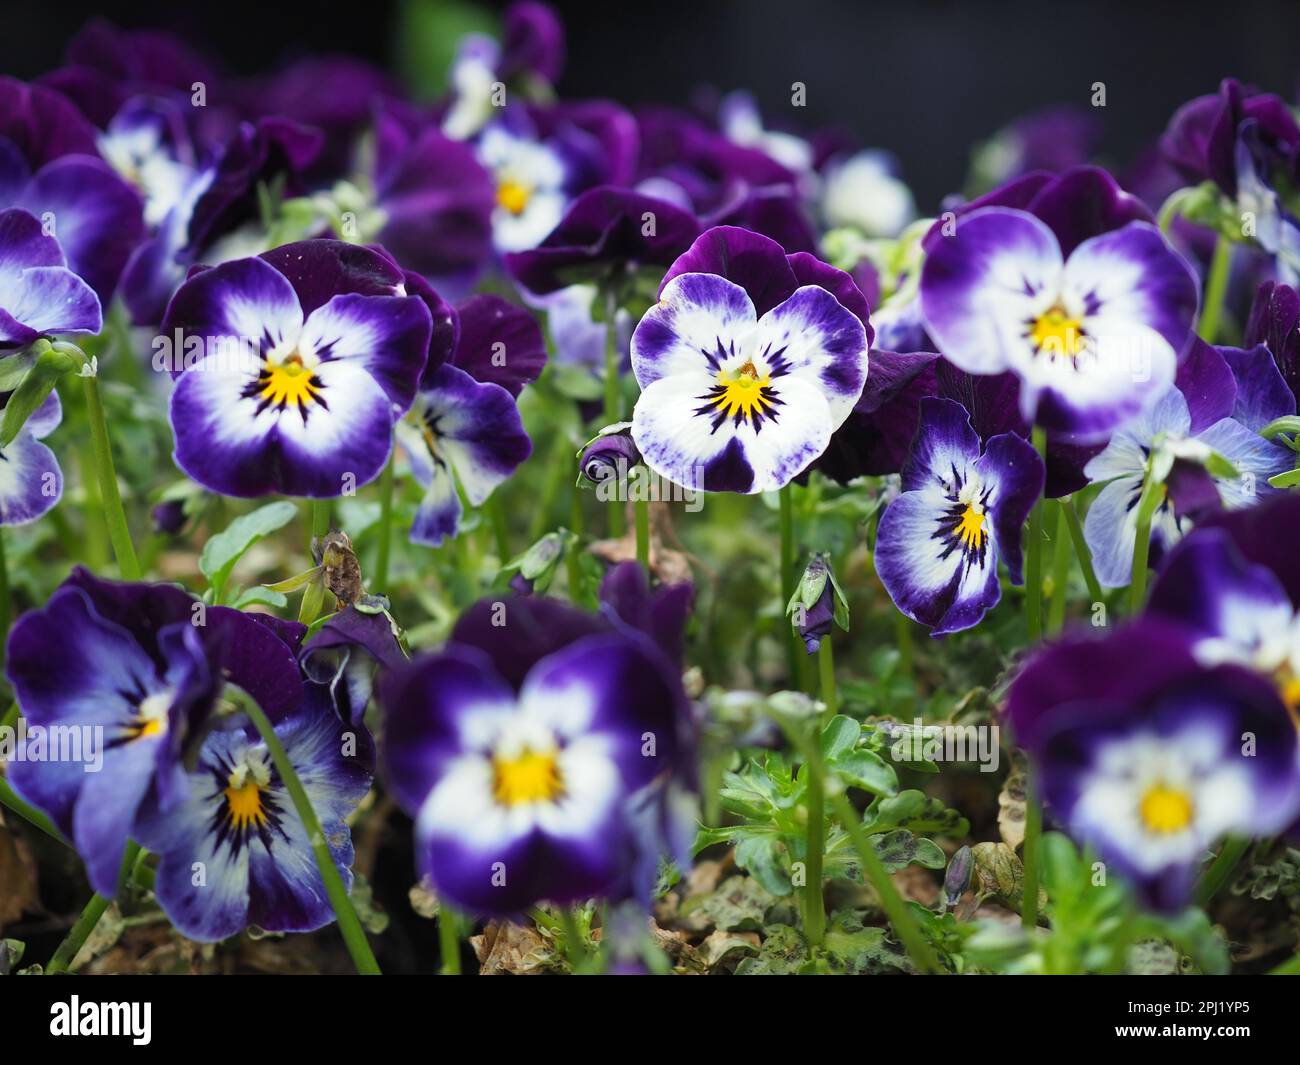 Viele violette und weiße Viola cornuta Gesichter nähern sich mit dem Fokus auf eine in einem britischen Wintercontainer Garten, möglicherweise „Phantom“ Variante Stockfoto